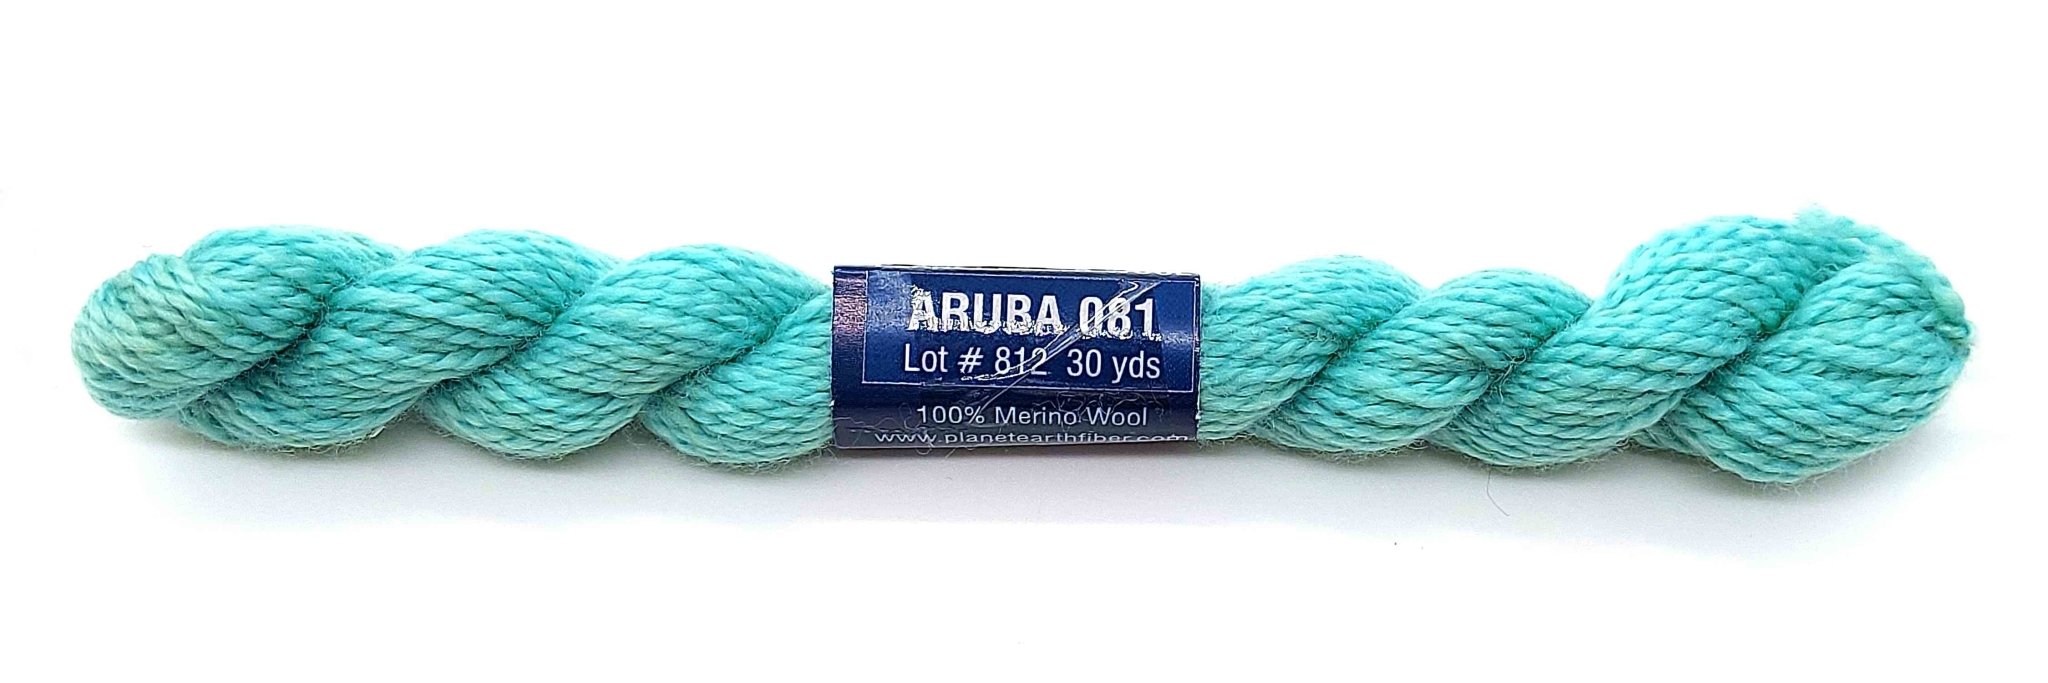 Planet Earth Wool 081 Aruba - The Flying Needles